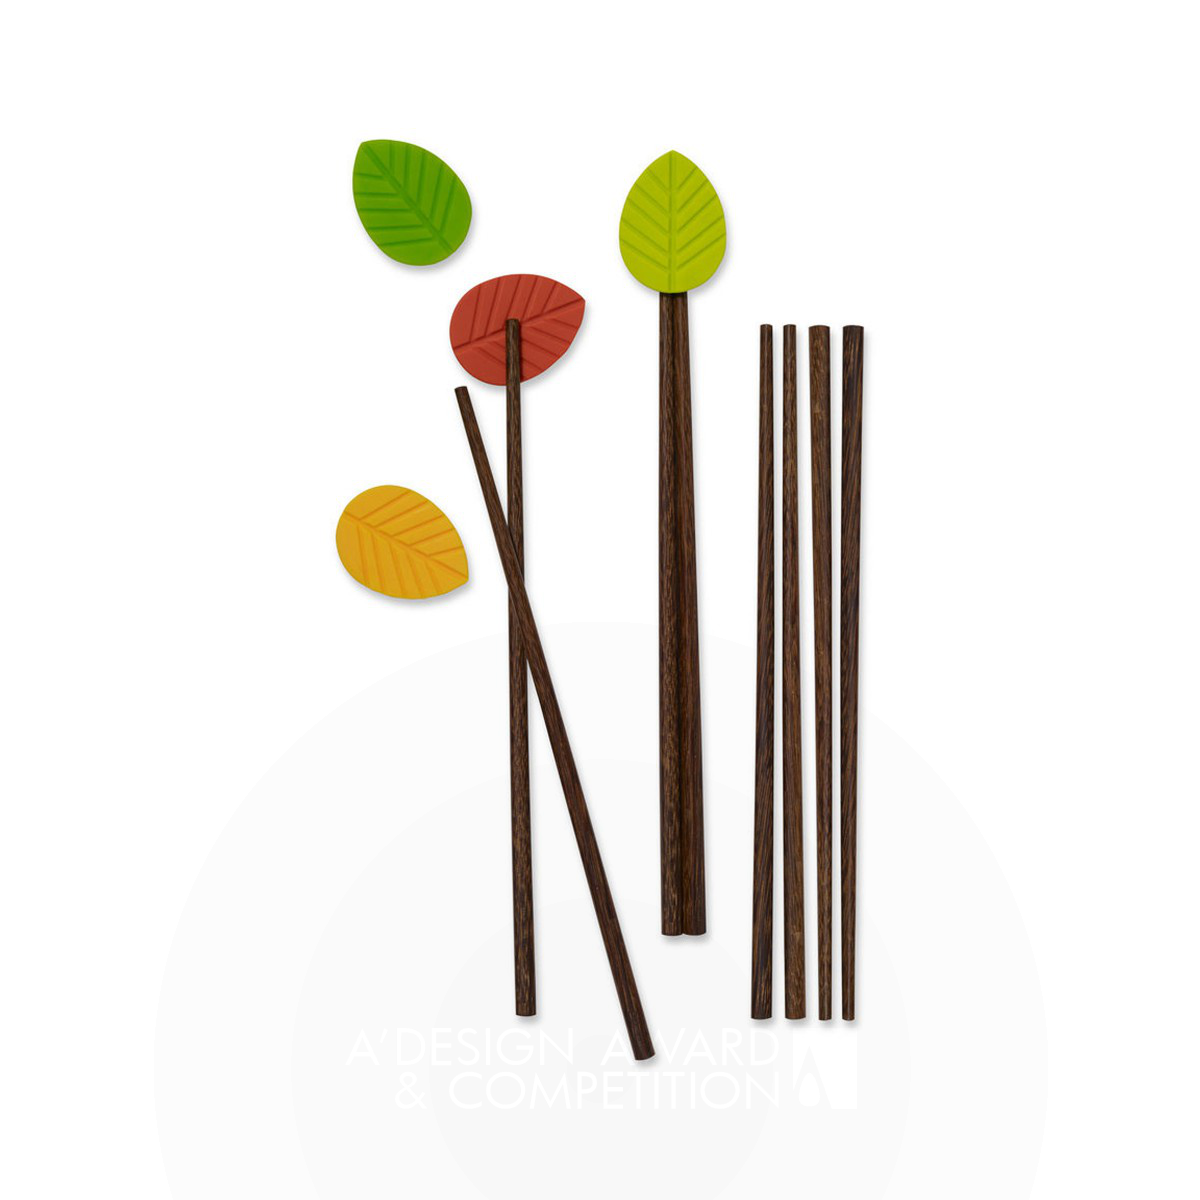 Ambi Chopsticks & Holders Utensil by OSCAR DE LA HERA